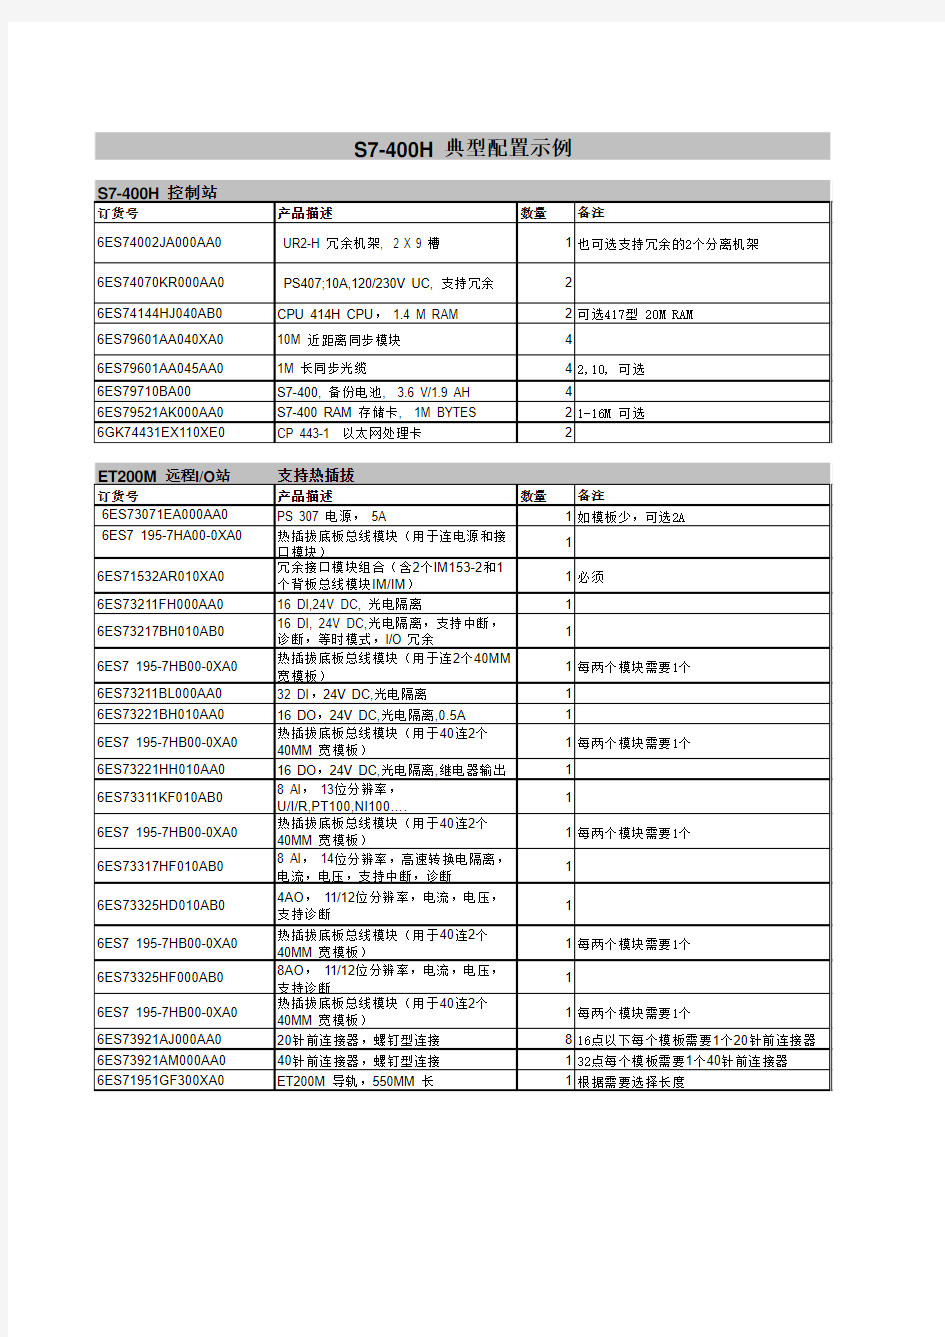 S7-400H_典型配置选型示例_V1